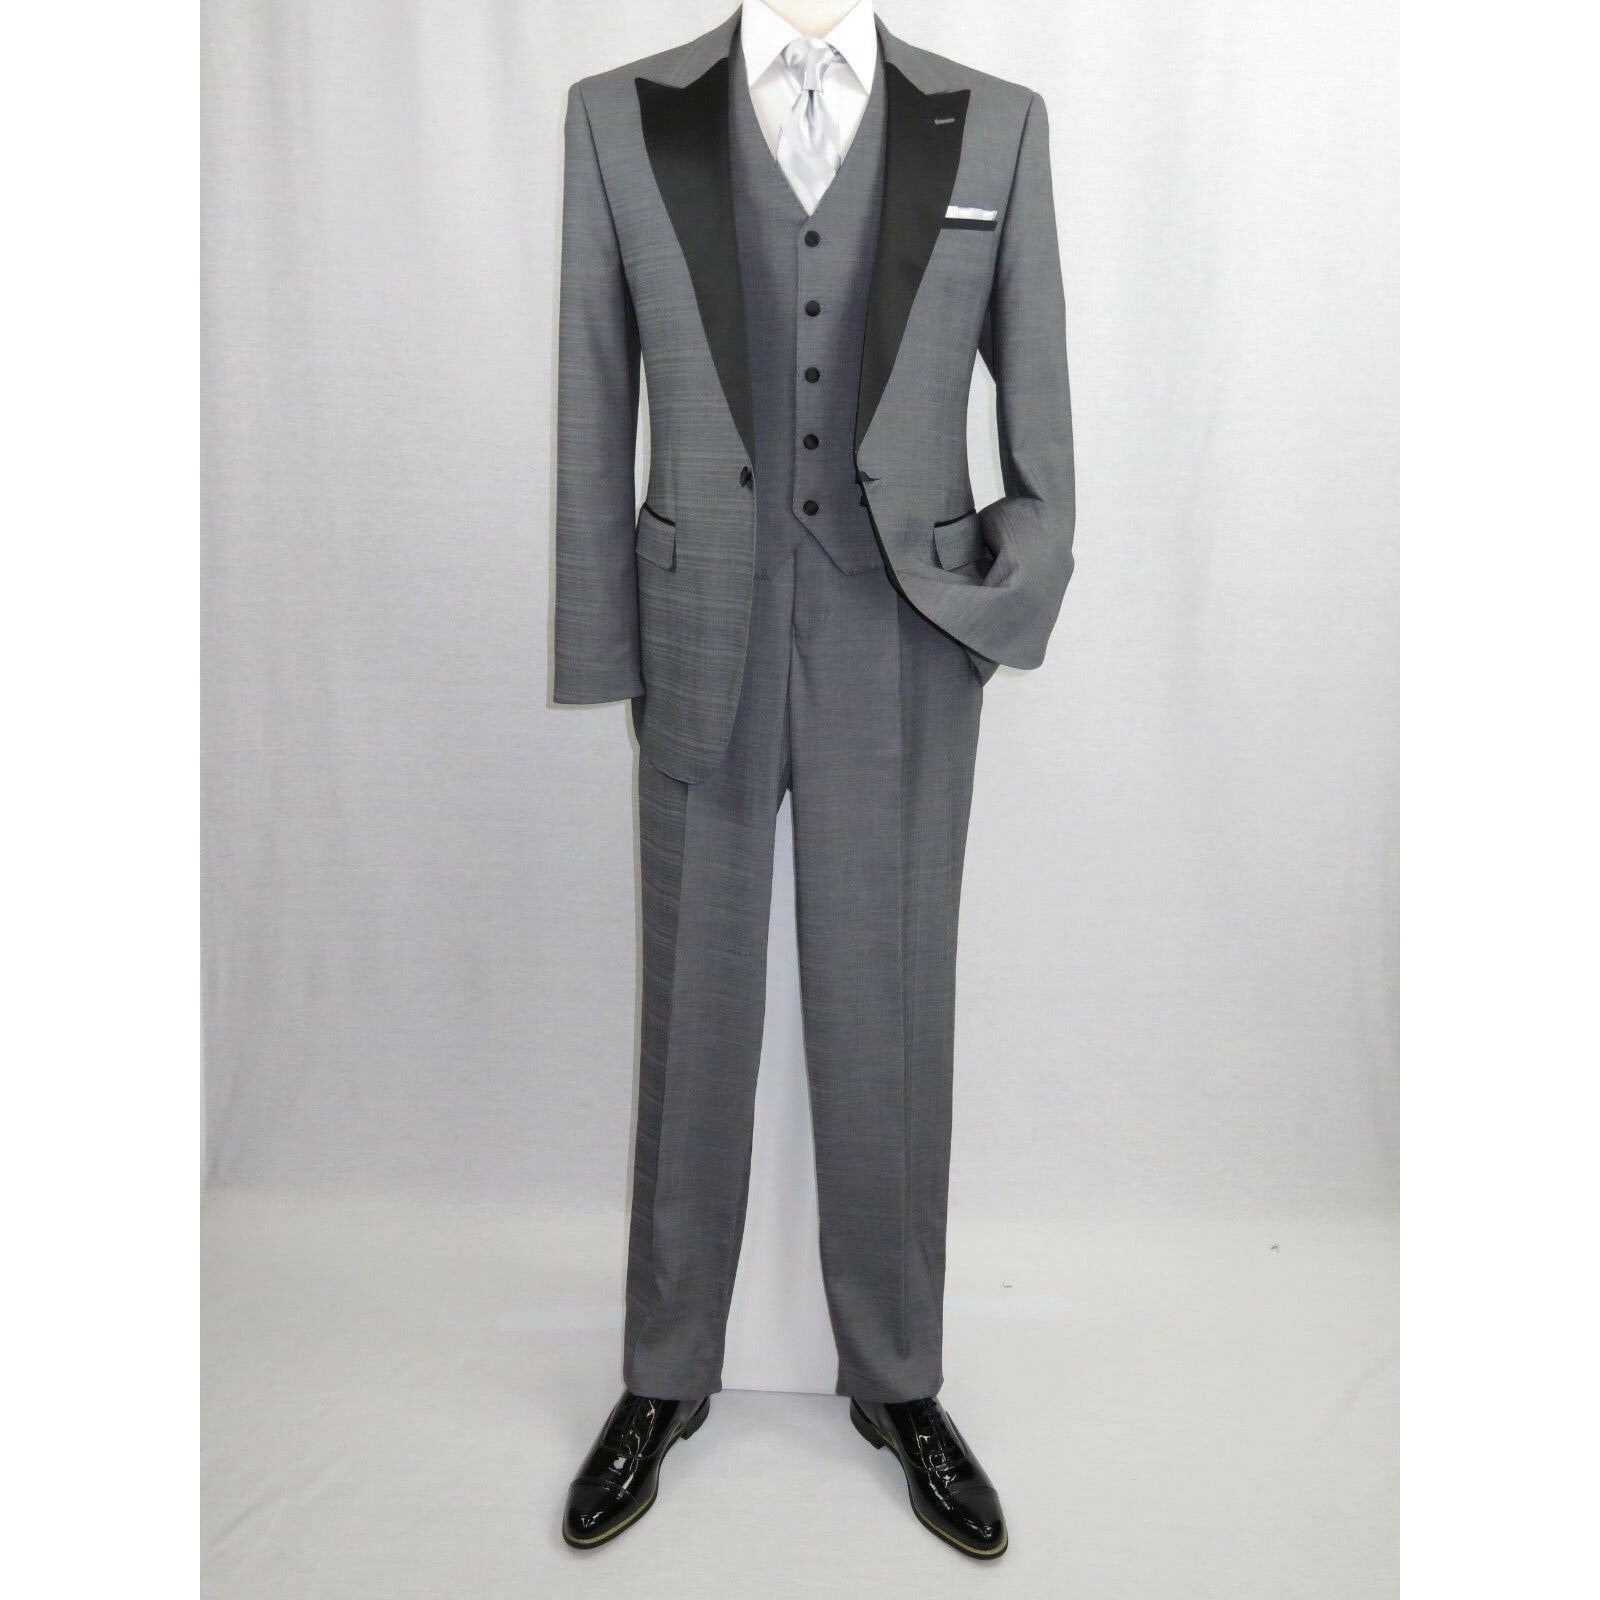 J.Valintin Men's Light Wool Statement Tuxedo Vested